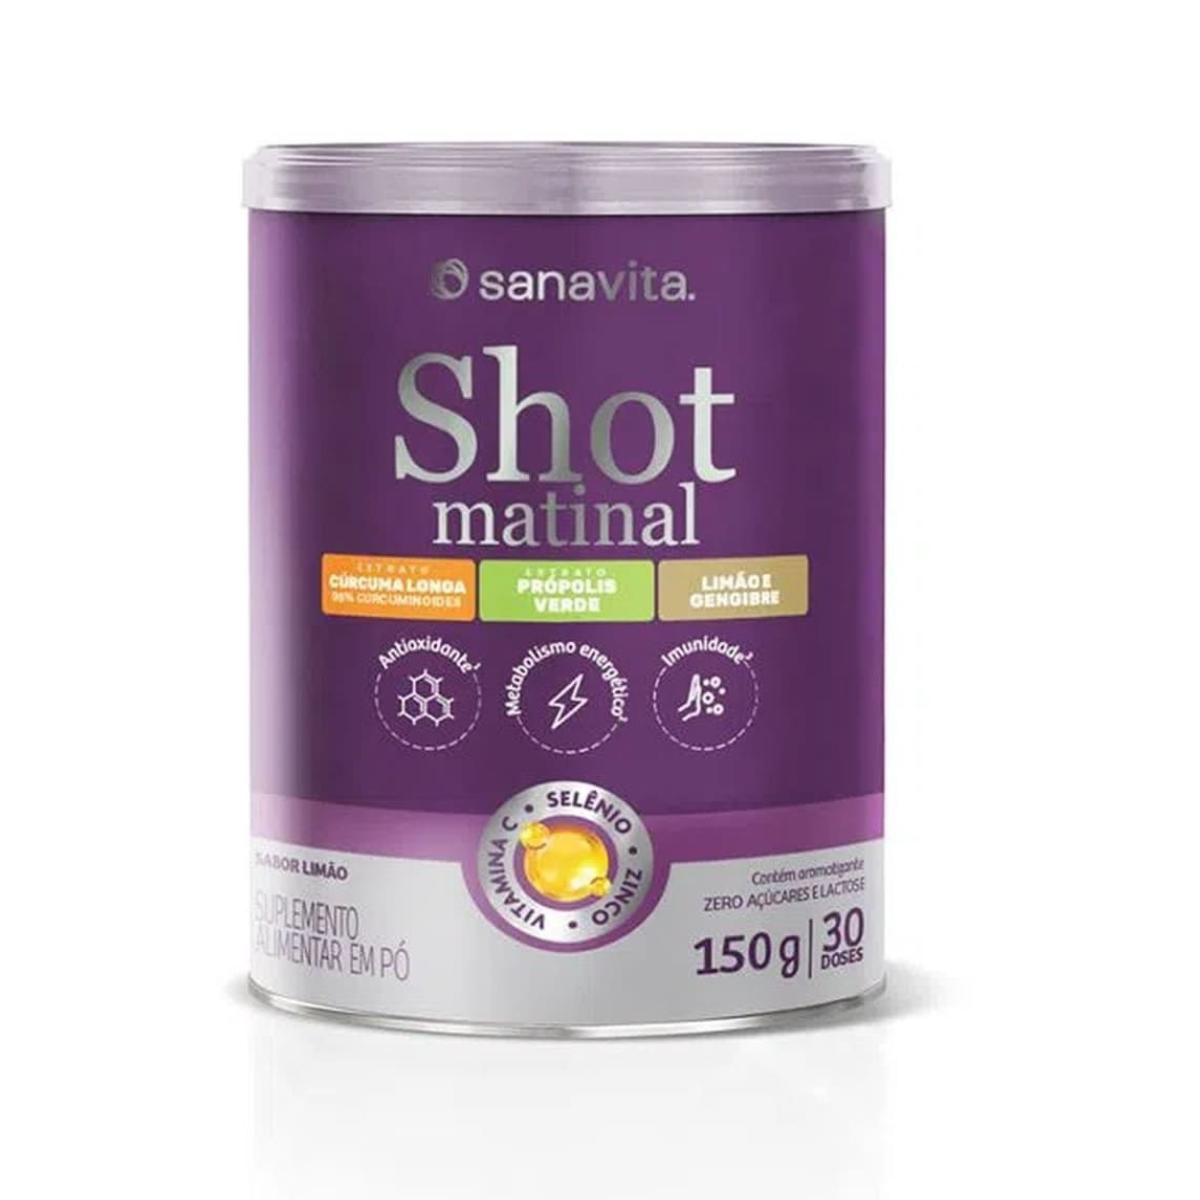 SHOT MATINAL - LATA 150G - sanavita